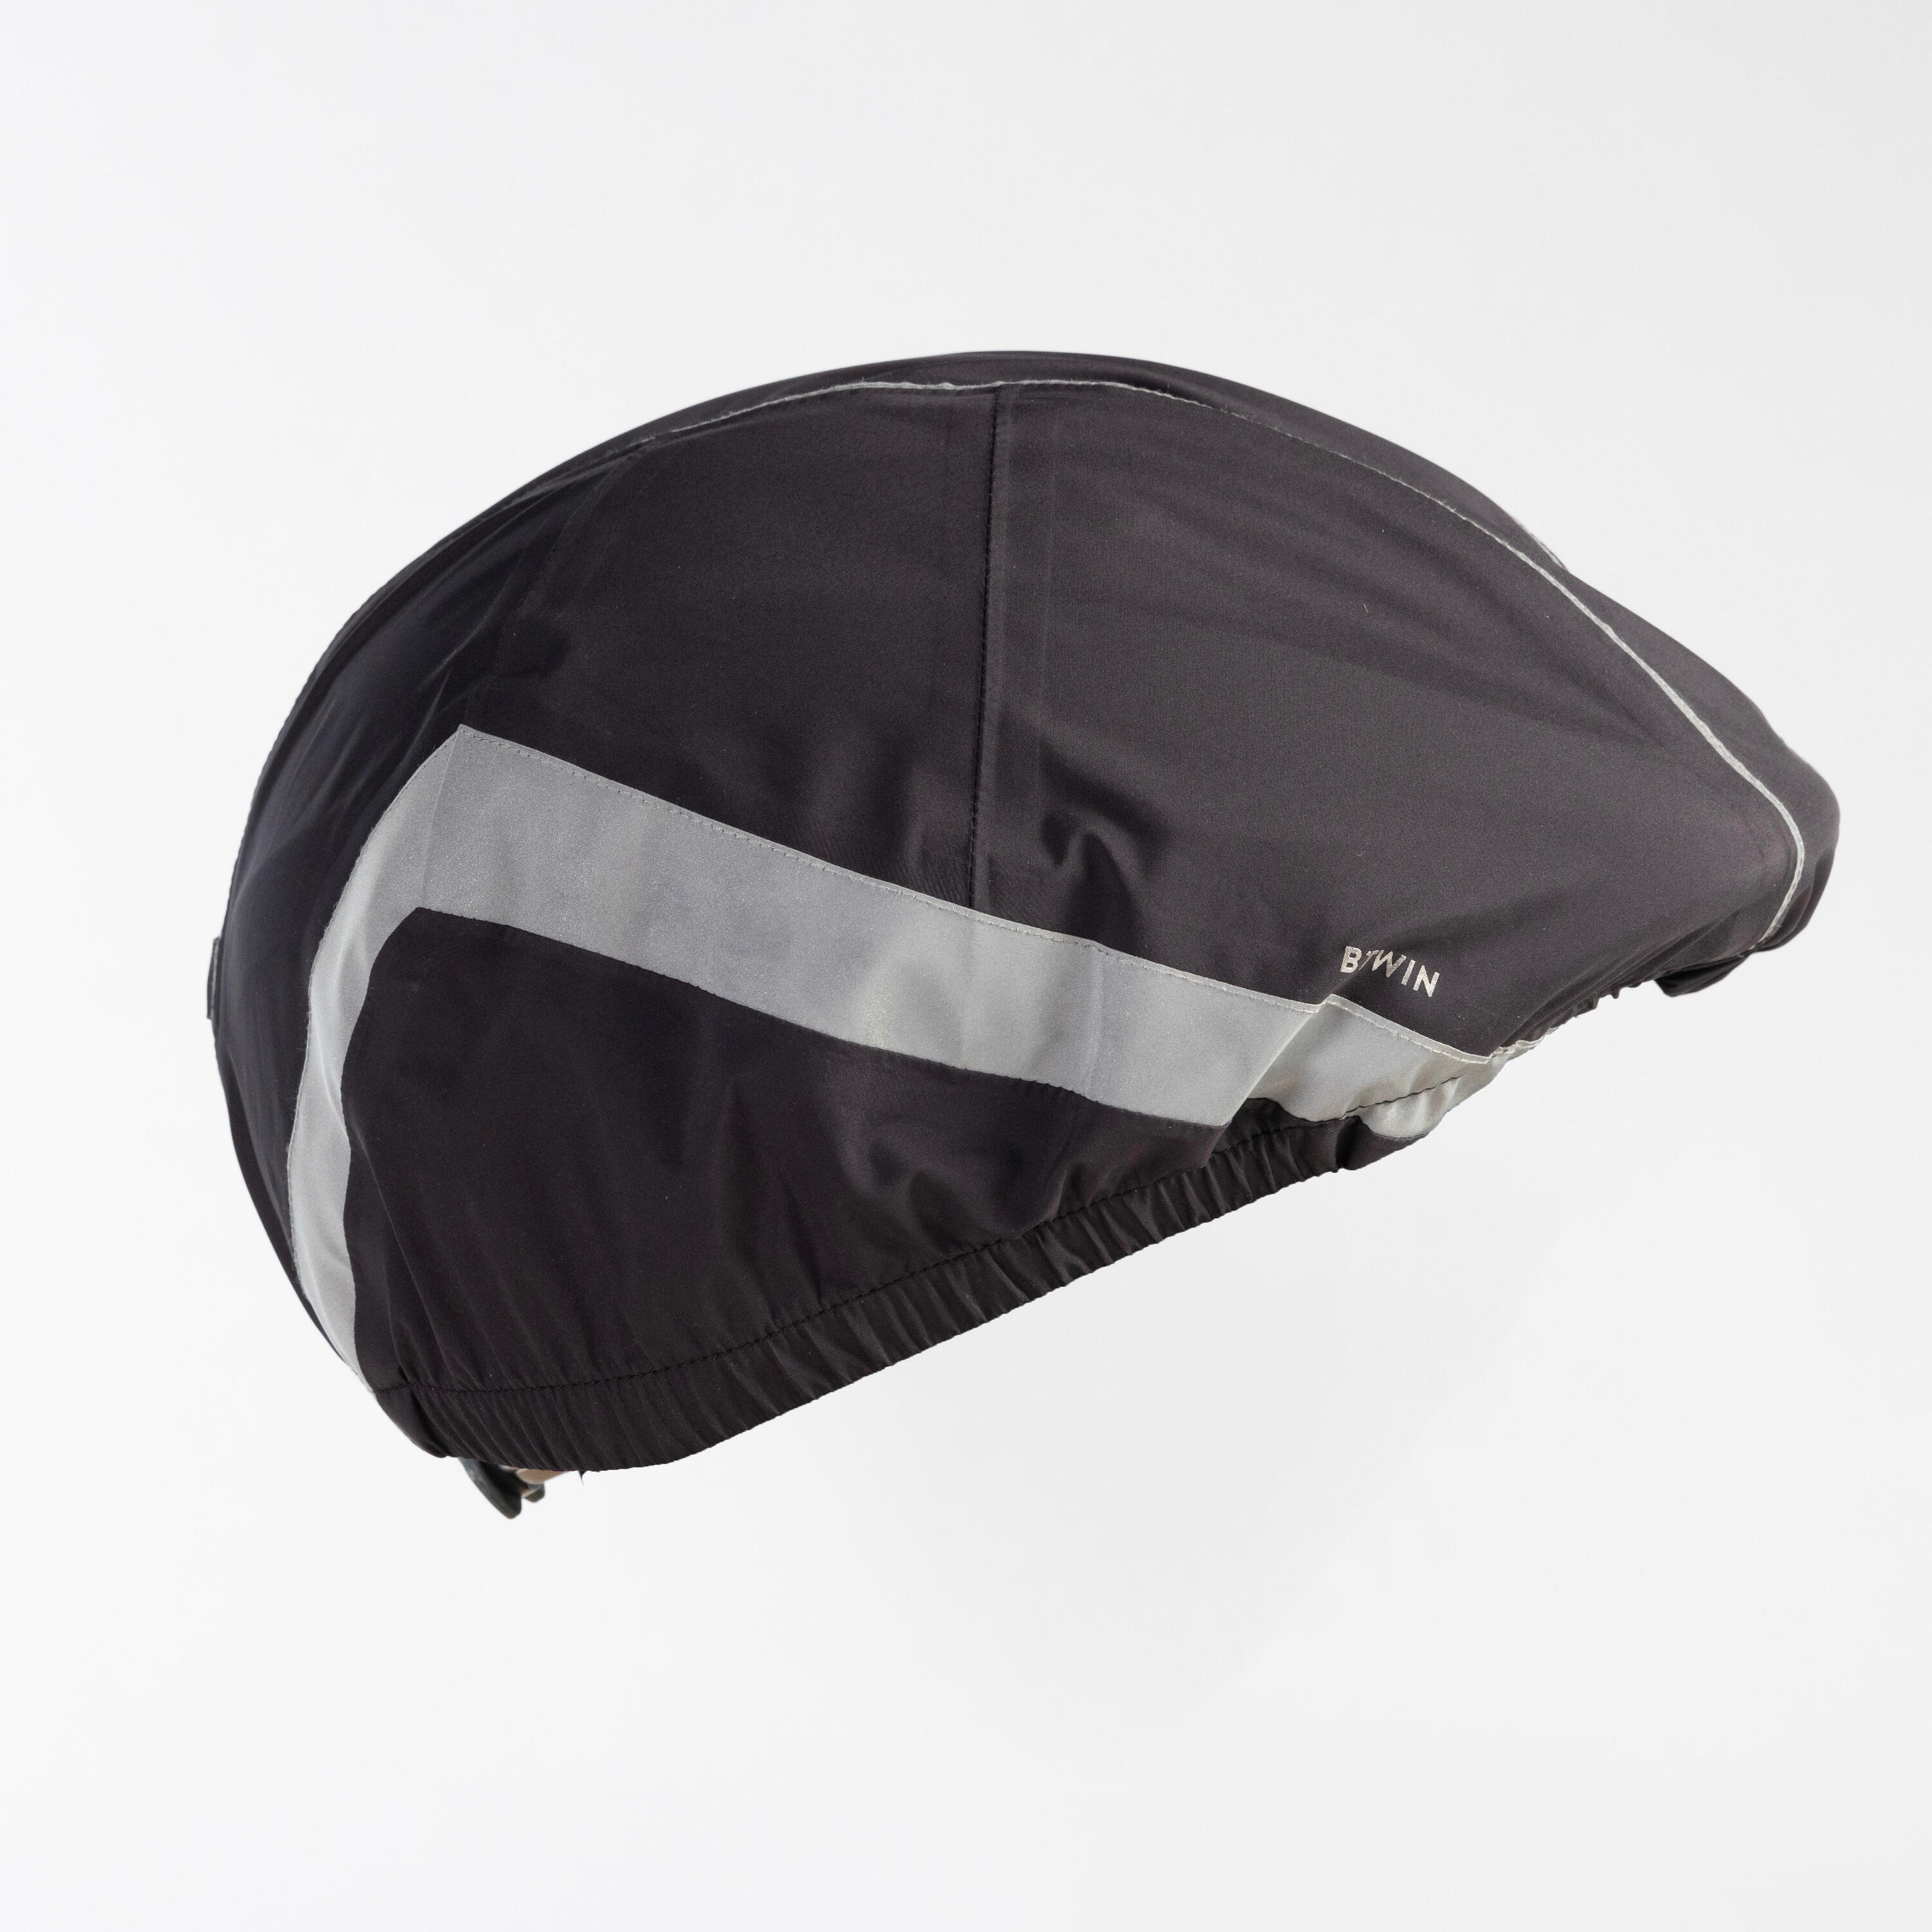 Night Visibility Waterproof Helmet Cover 940 - Black 2/6